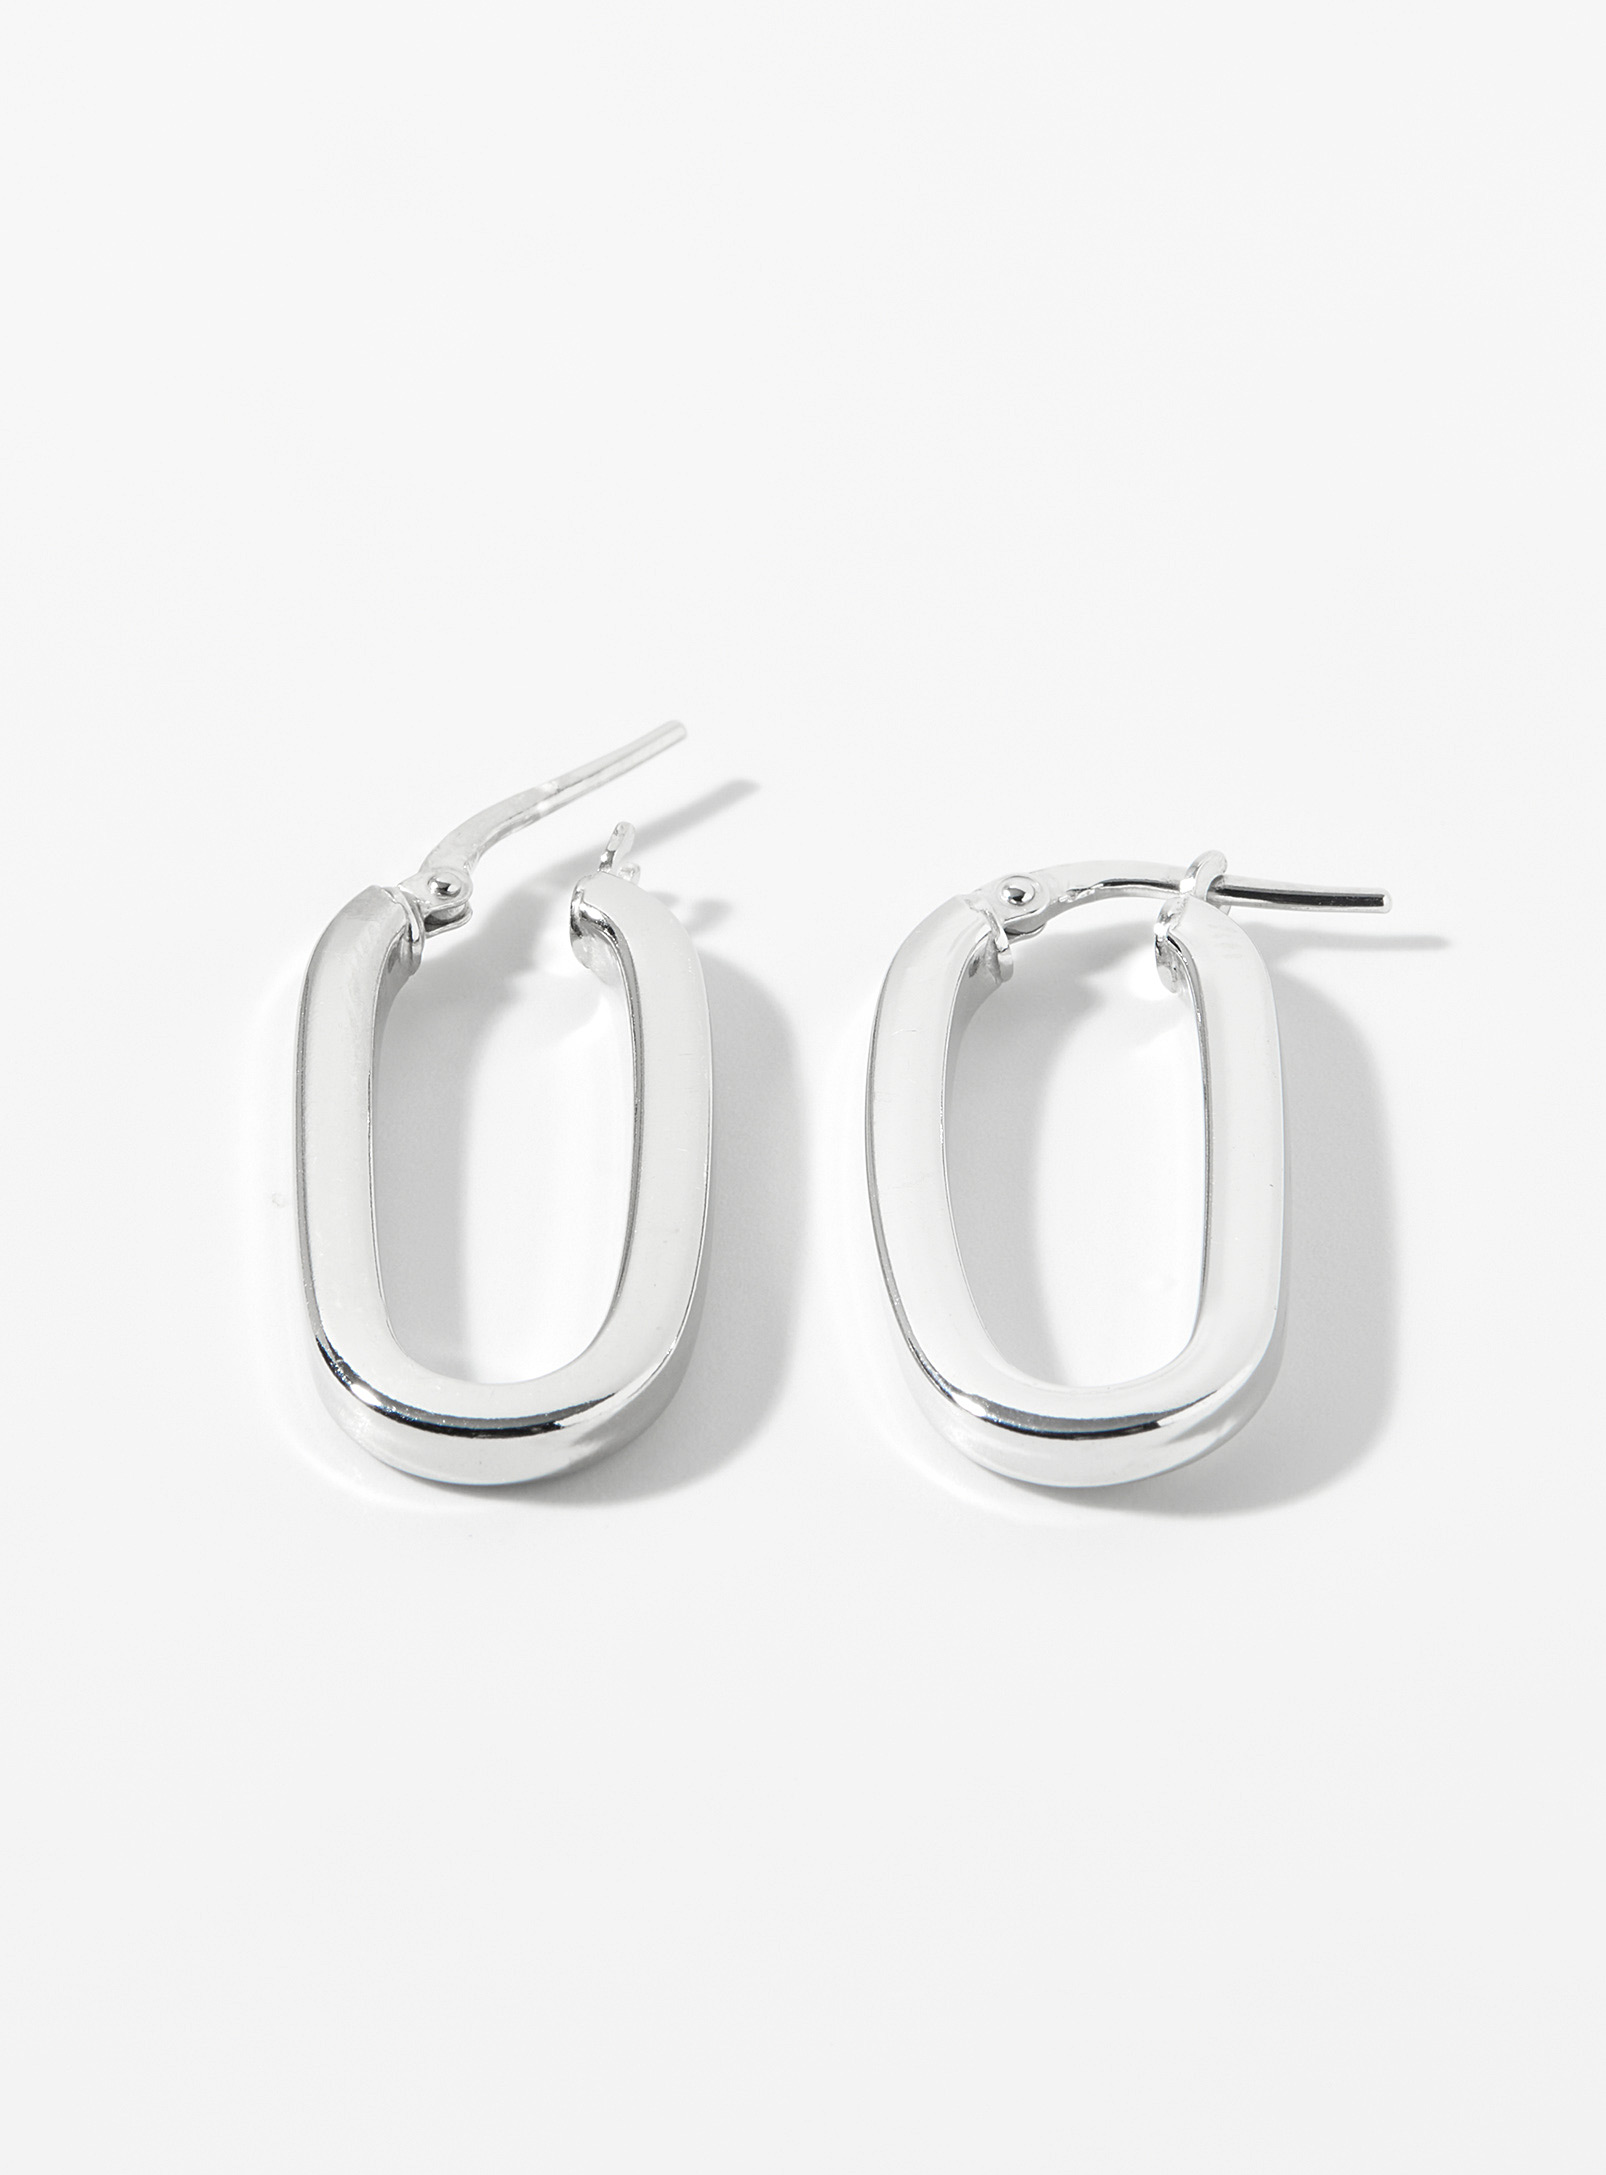 Simons - Women's Silver oval Hoop Earrings